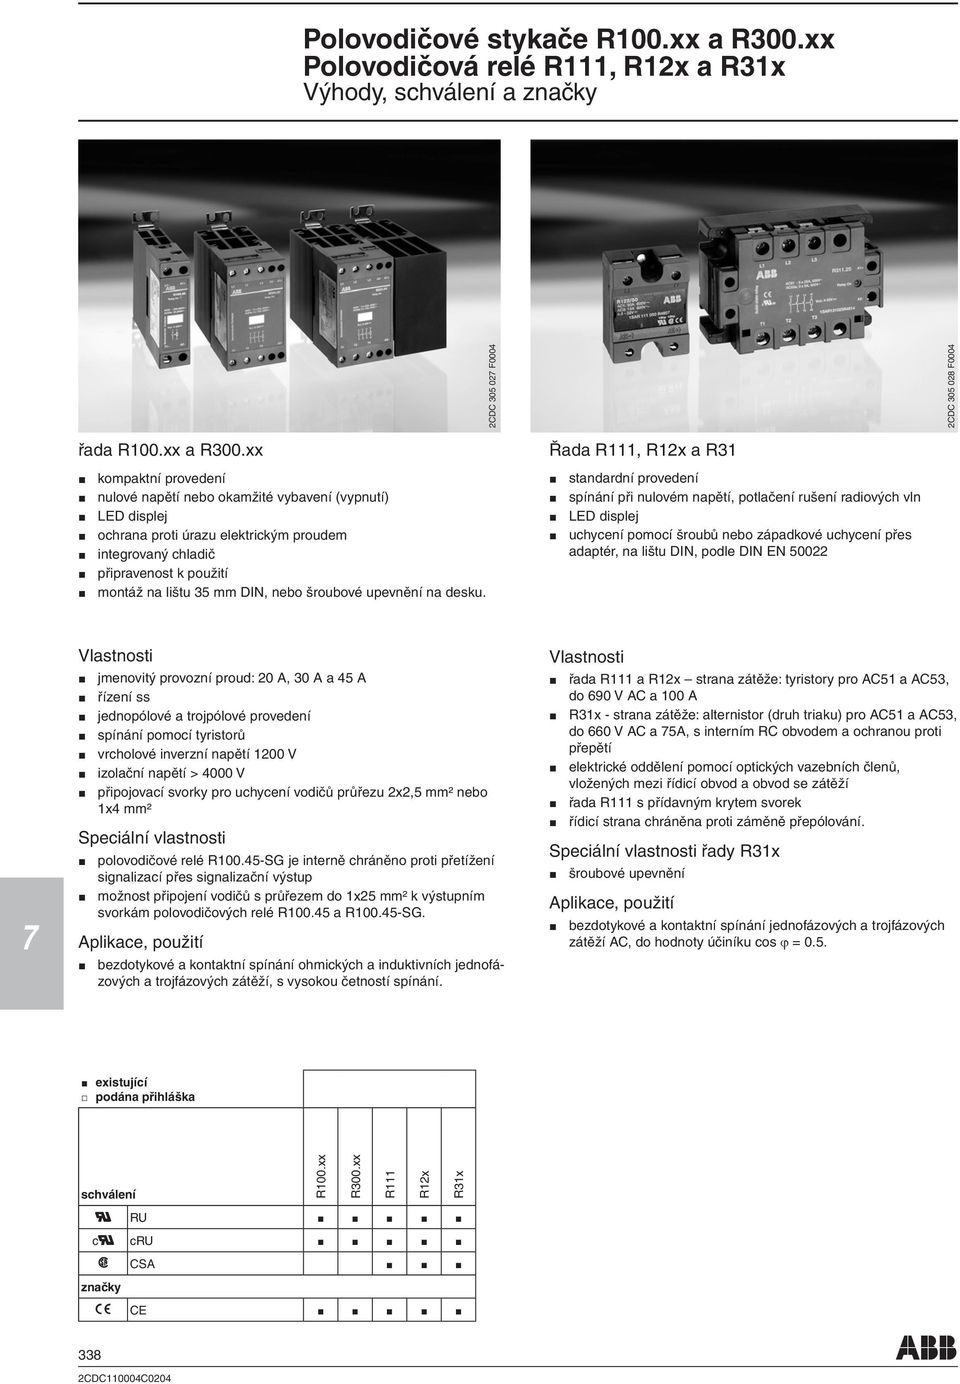 xx kompaktní provedení nulové napětí nebo okamžité vybavení (vypnutí) LED displej ochrana proti úrazu elektrickým proudem integrovaný chladič připravenost k použití montáž na lištu 35 mm DIN, nebo